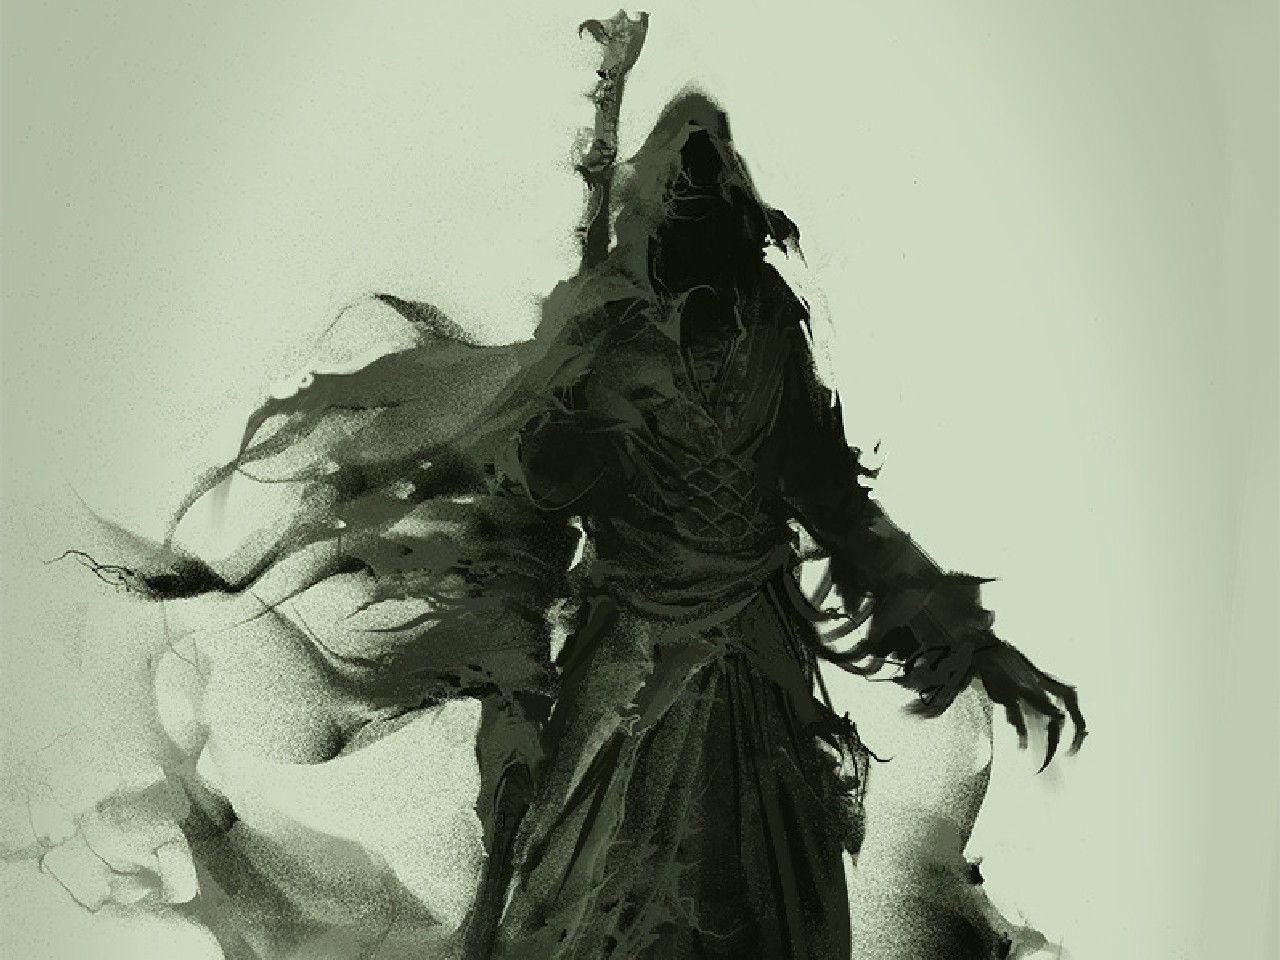 General 1280x960 fantasy art Grim Reaper artwork simple background